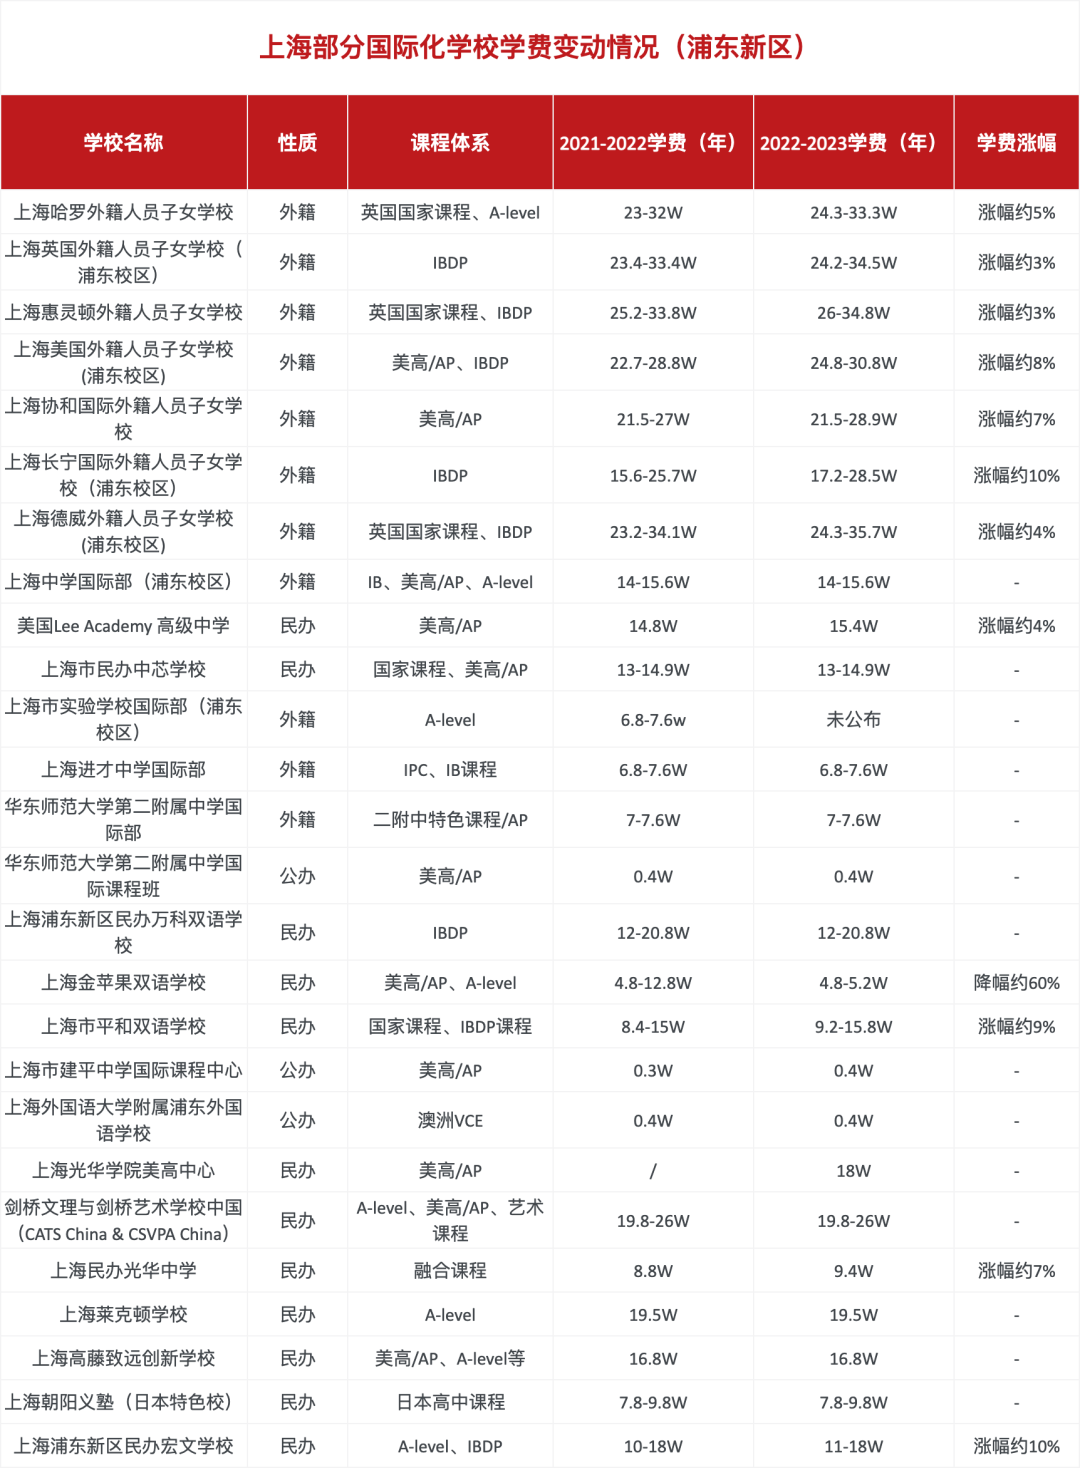 上海浦东区部分国际化学校学费变动情况